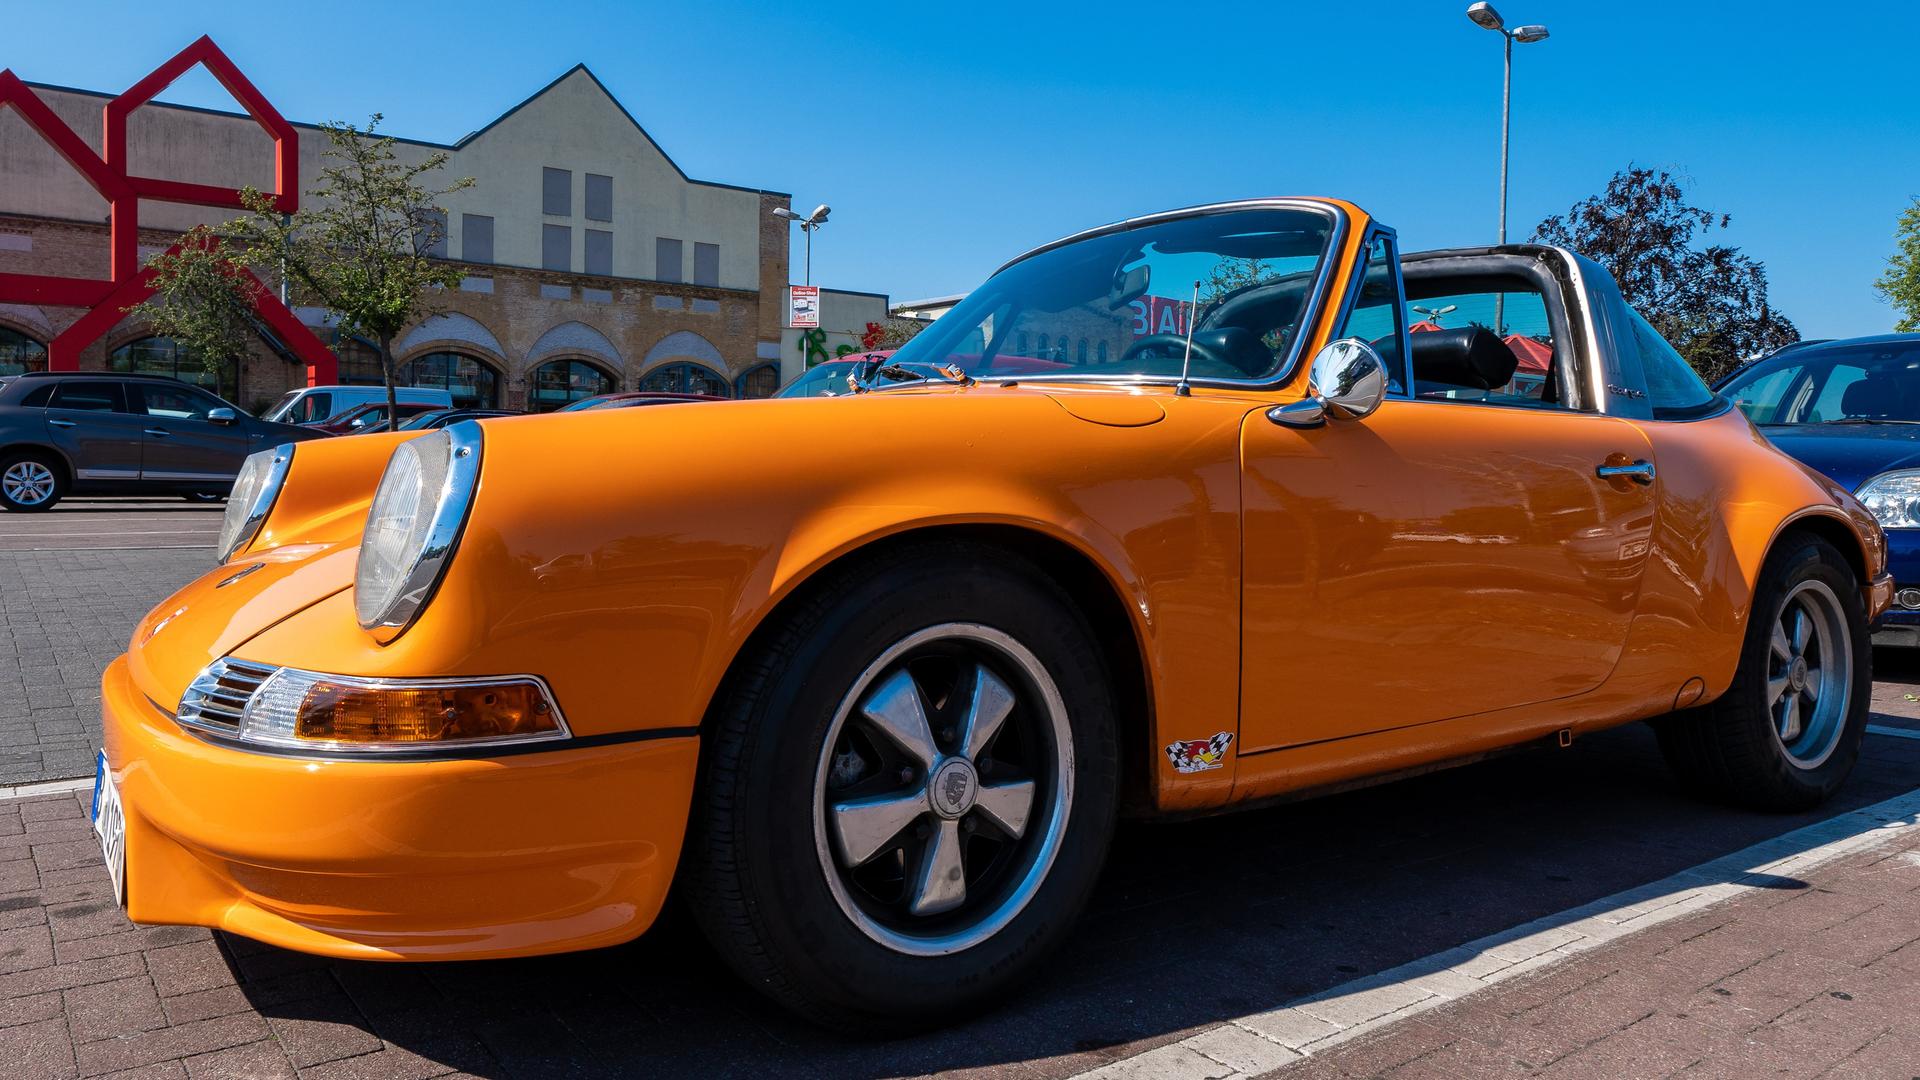 Ein orangefarbener Porsche 911 steht auf einem Parkplatz.